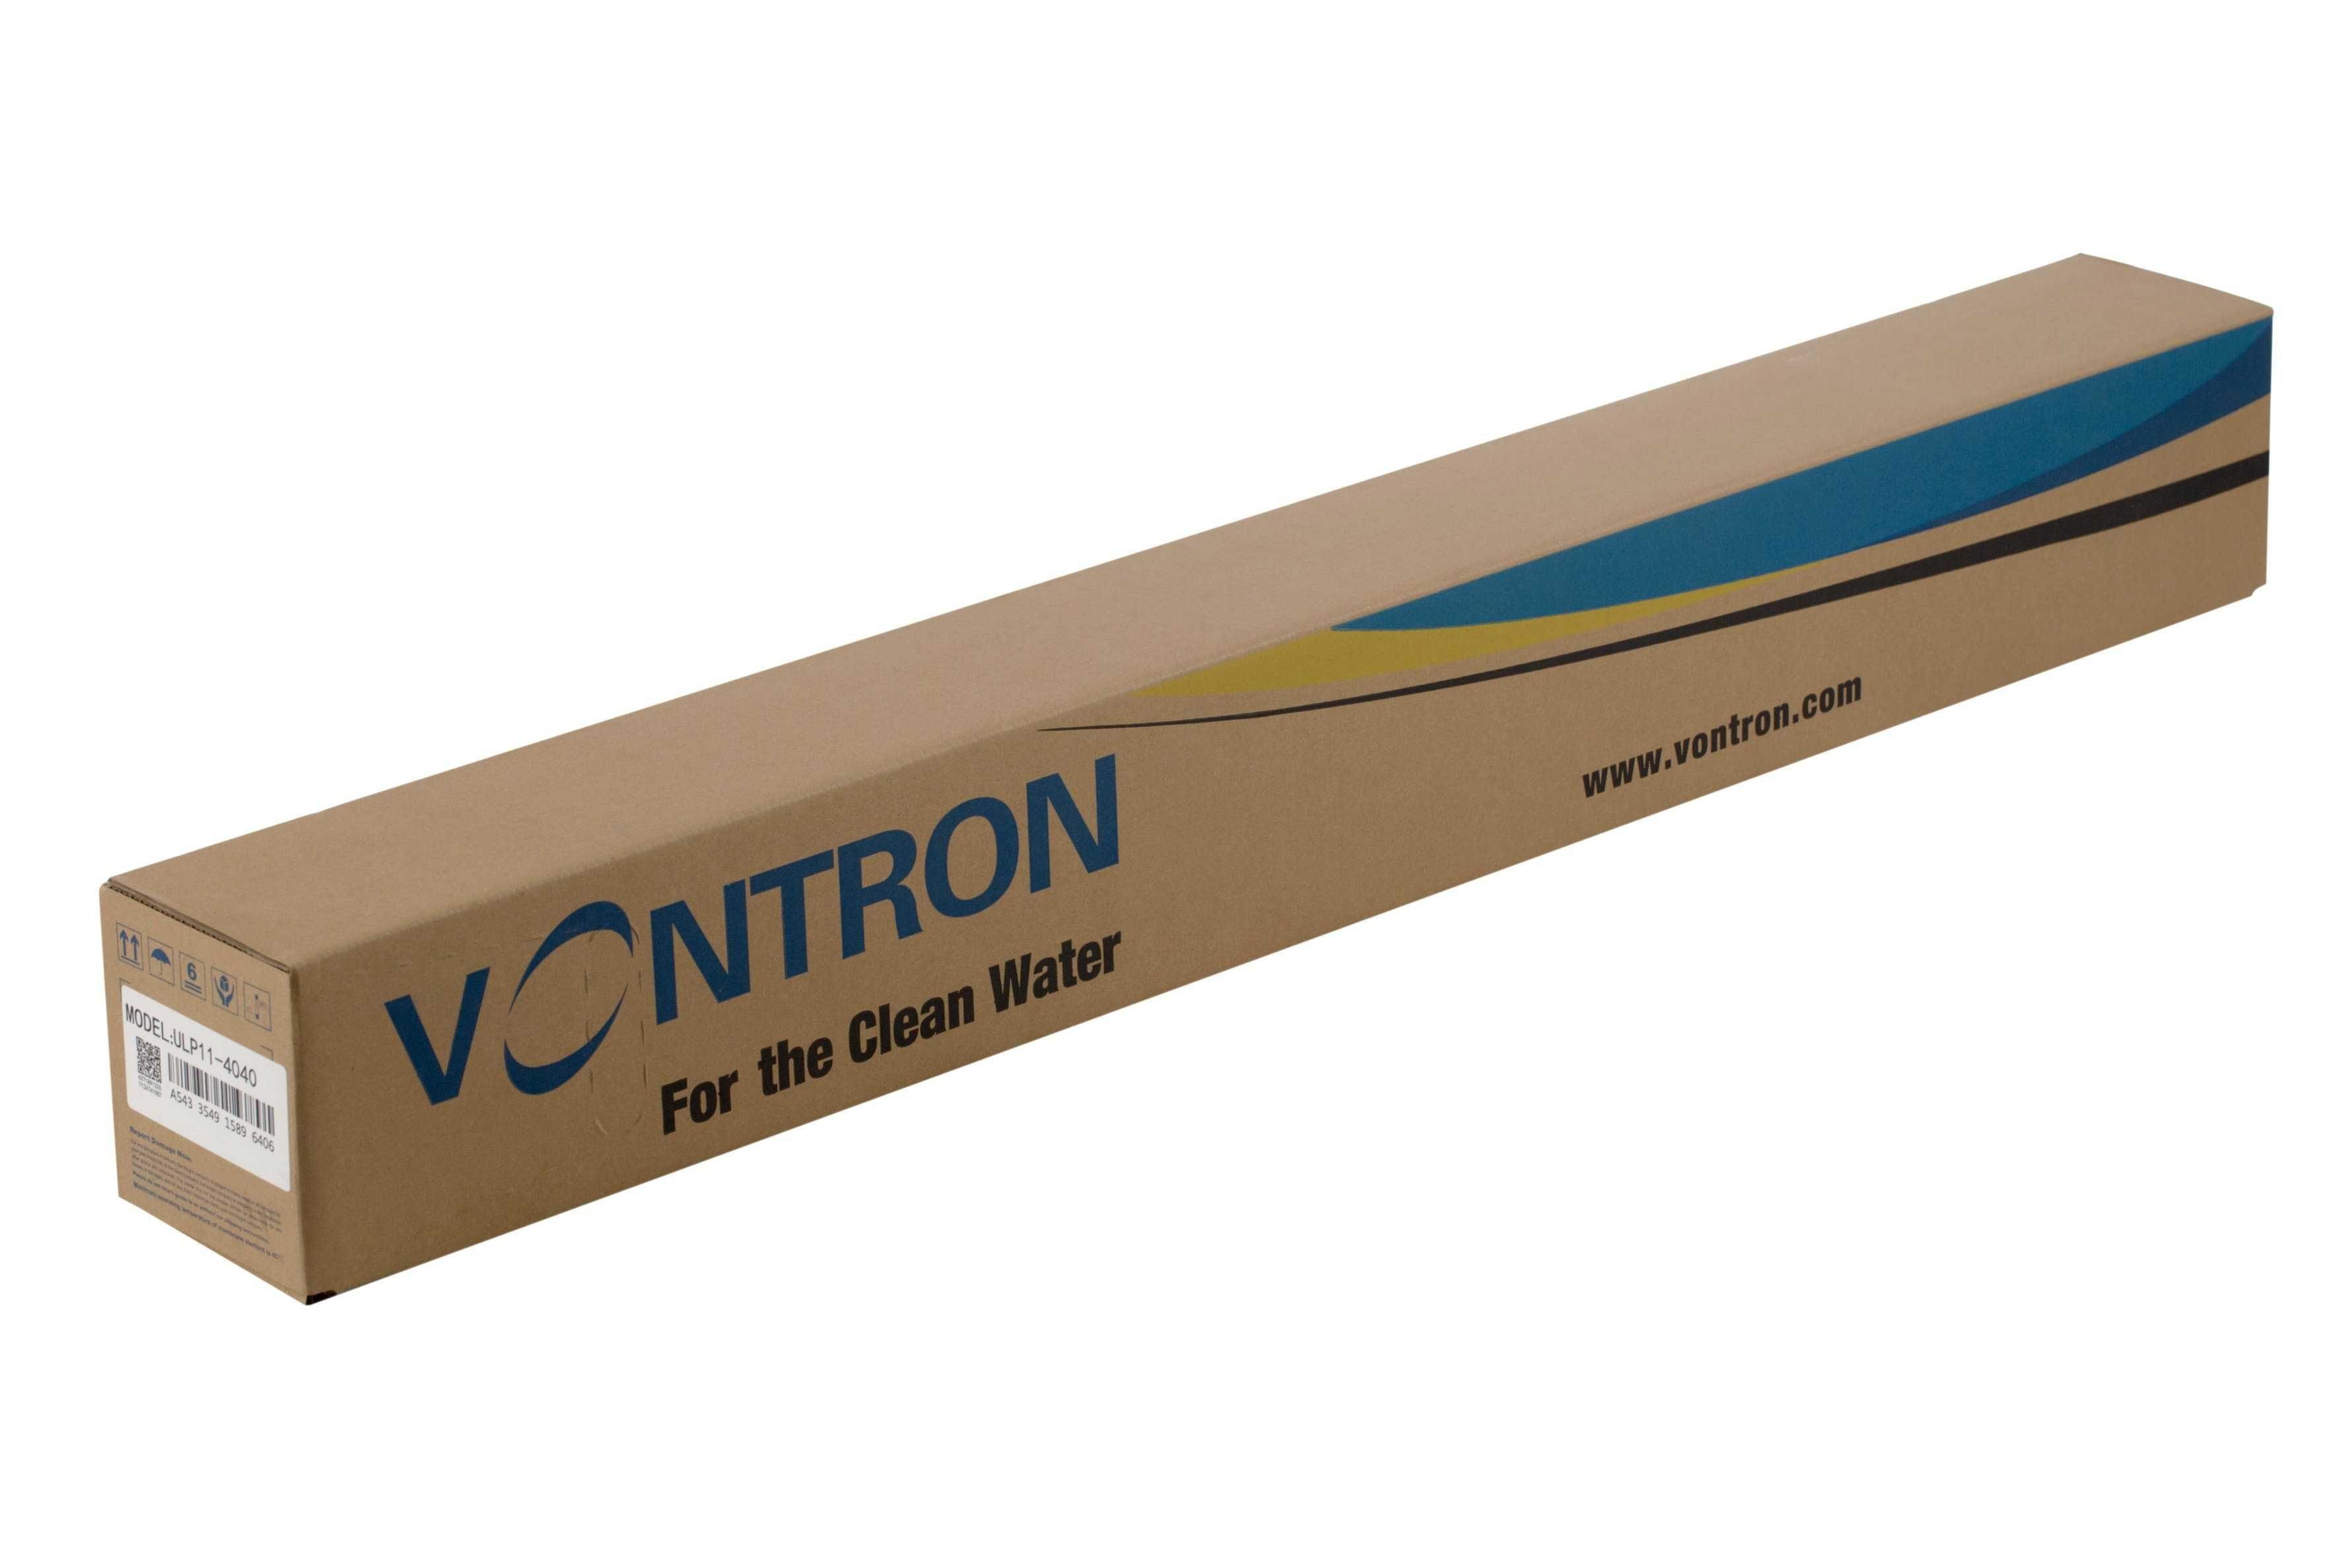 Мембрана VONTRON ULP11-4040